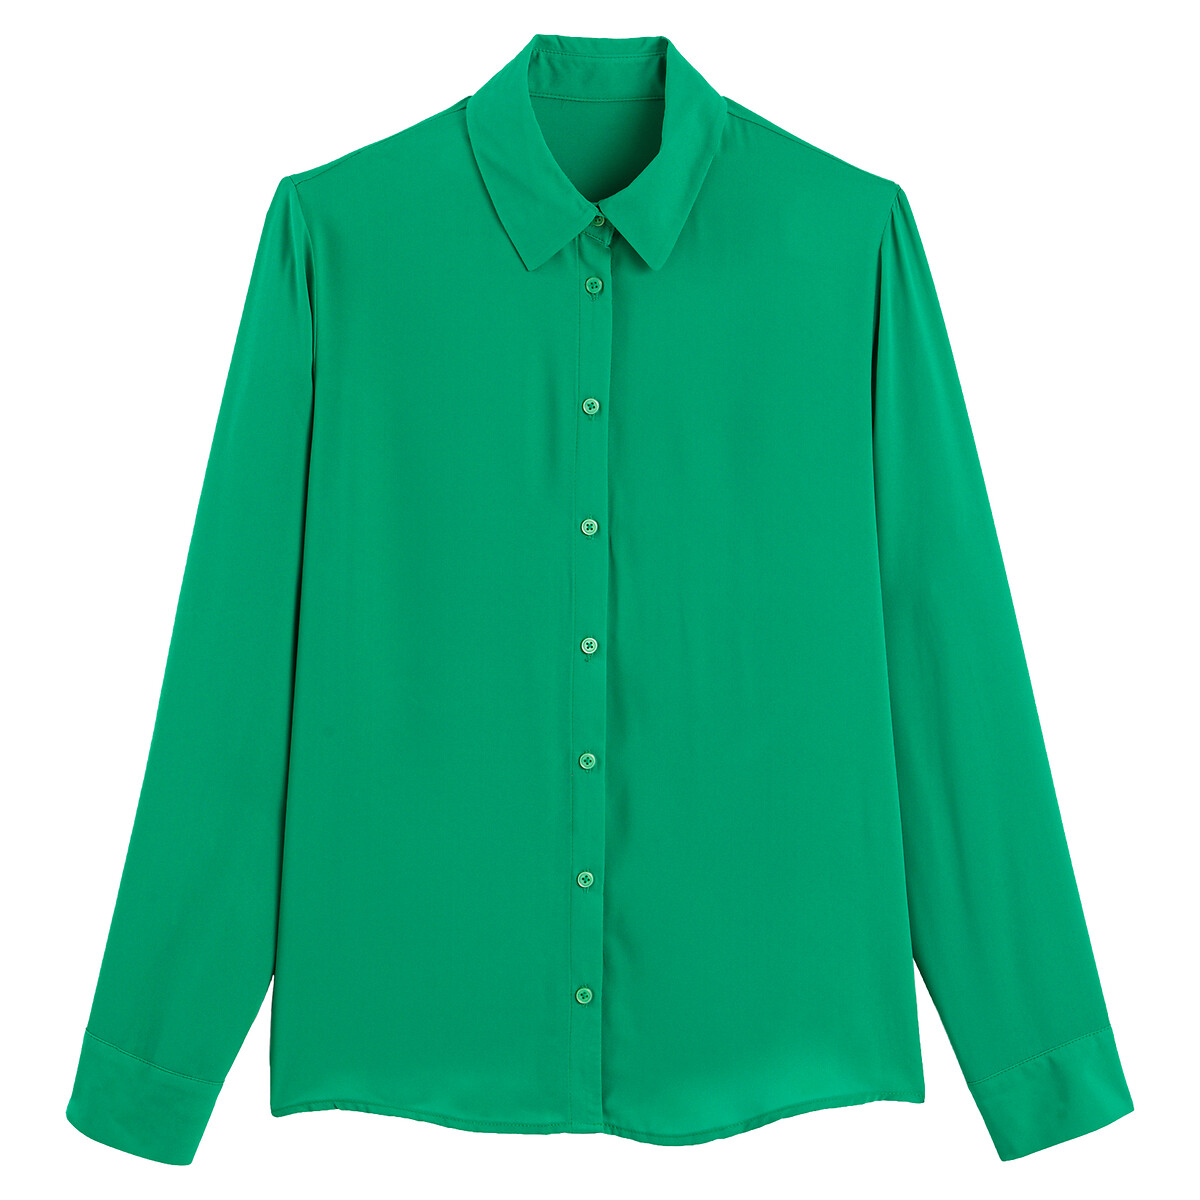 Блузка LA REDOUTE COLLECTIONS Блузка С длинными рукавами 36 (FR) - 42 (RUS) зеленый, размер 36 (FR) - 42 (RUS) Блузка С длинными рукавами 36 (FR) - 42 (RUS) зеленый - фото 5